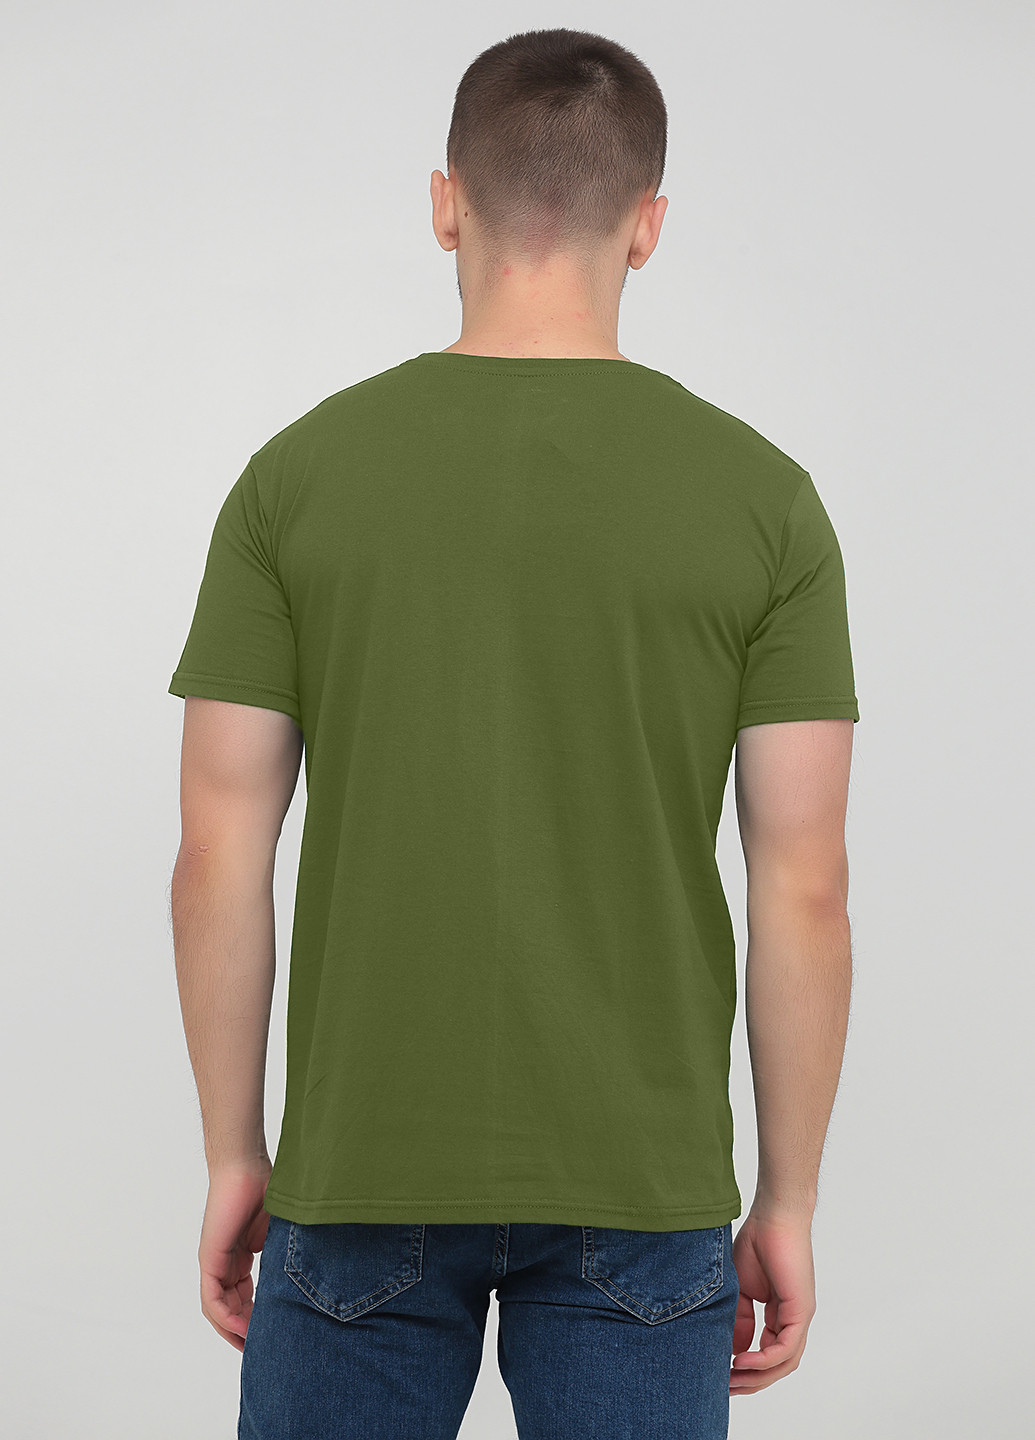 Оливковая футболка мужская 385-24 оливковая с коротким рукавом Malta